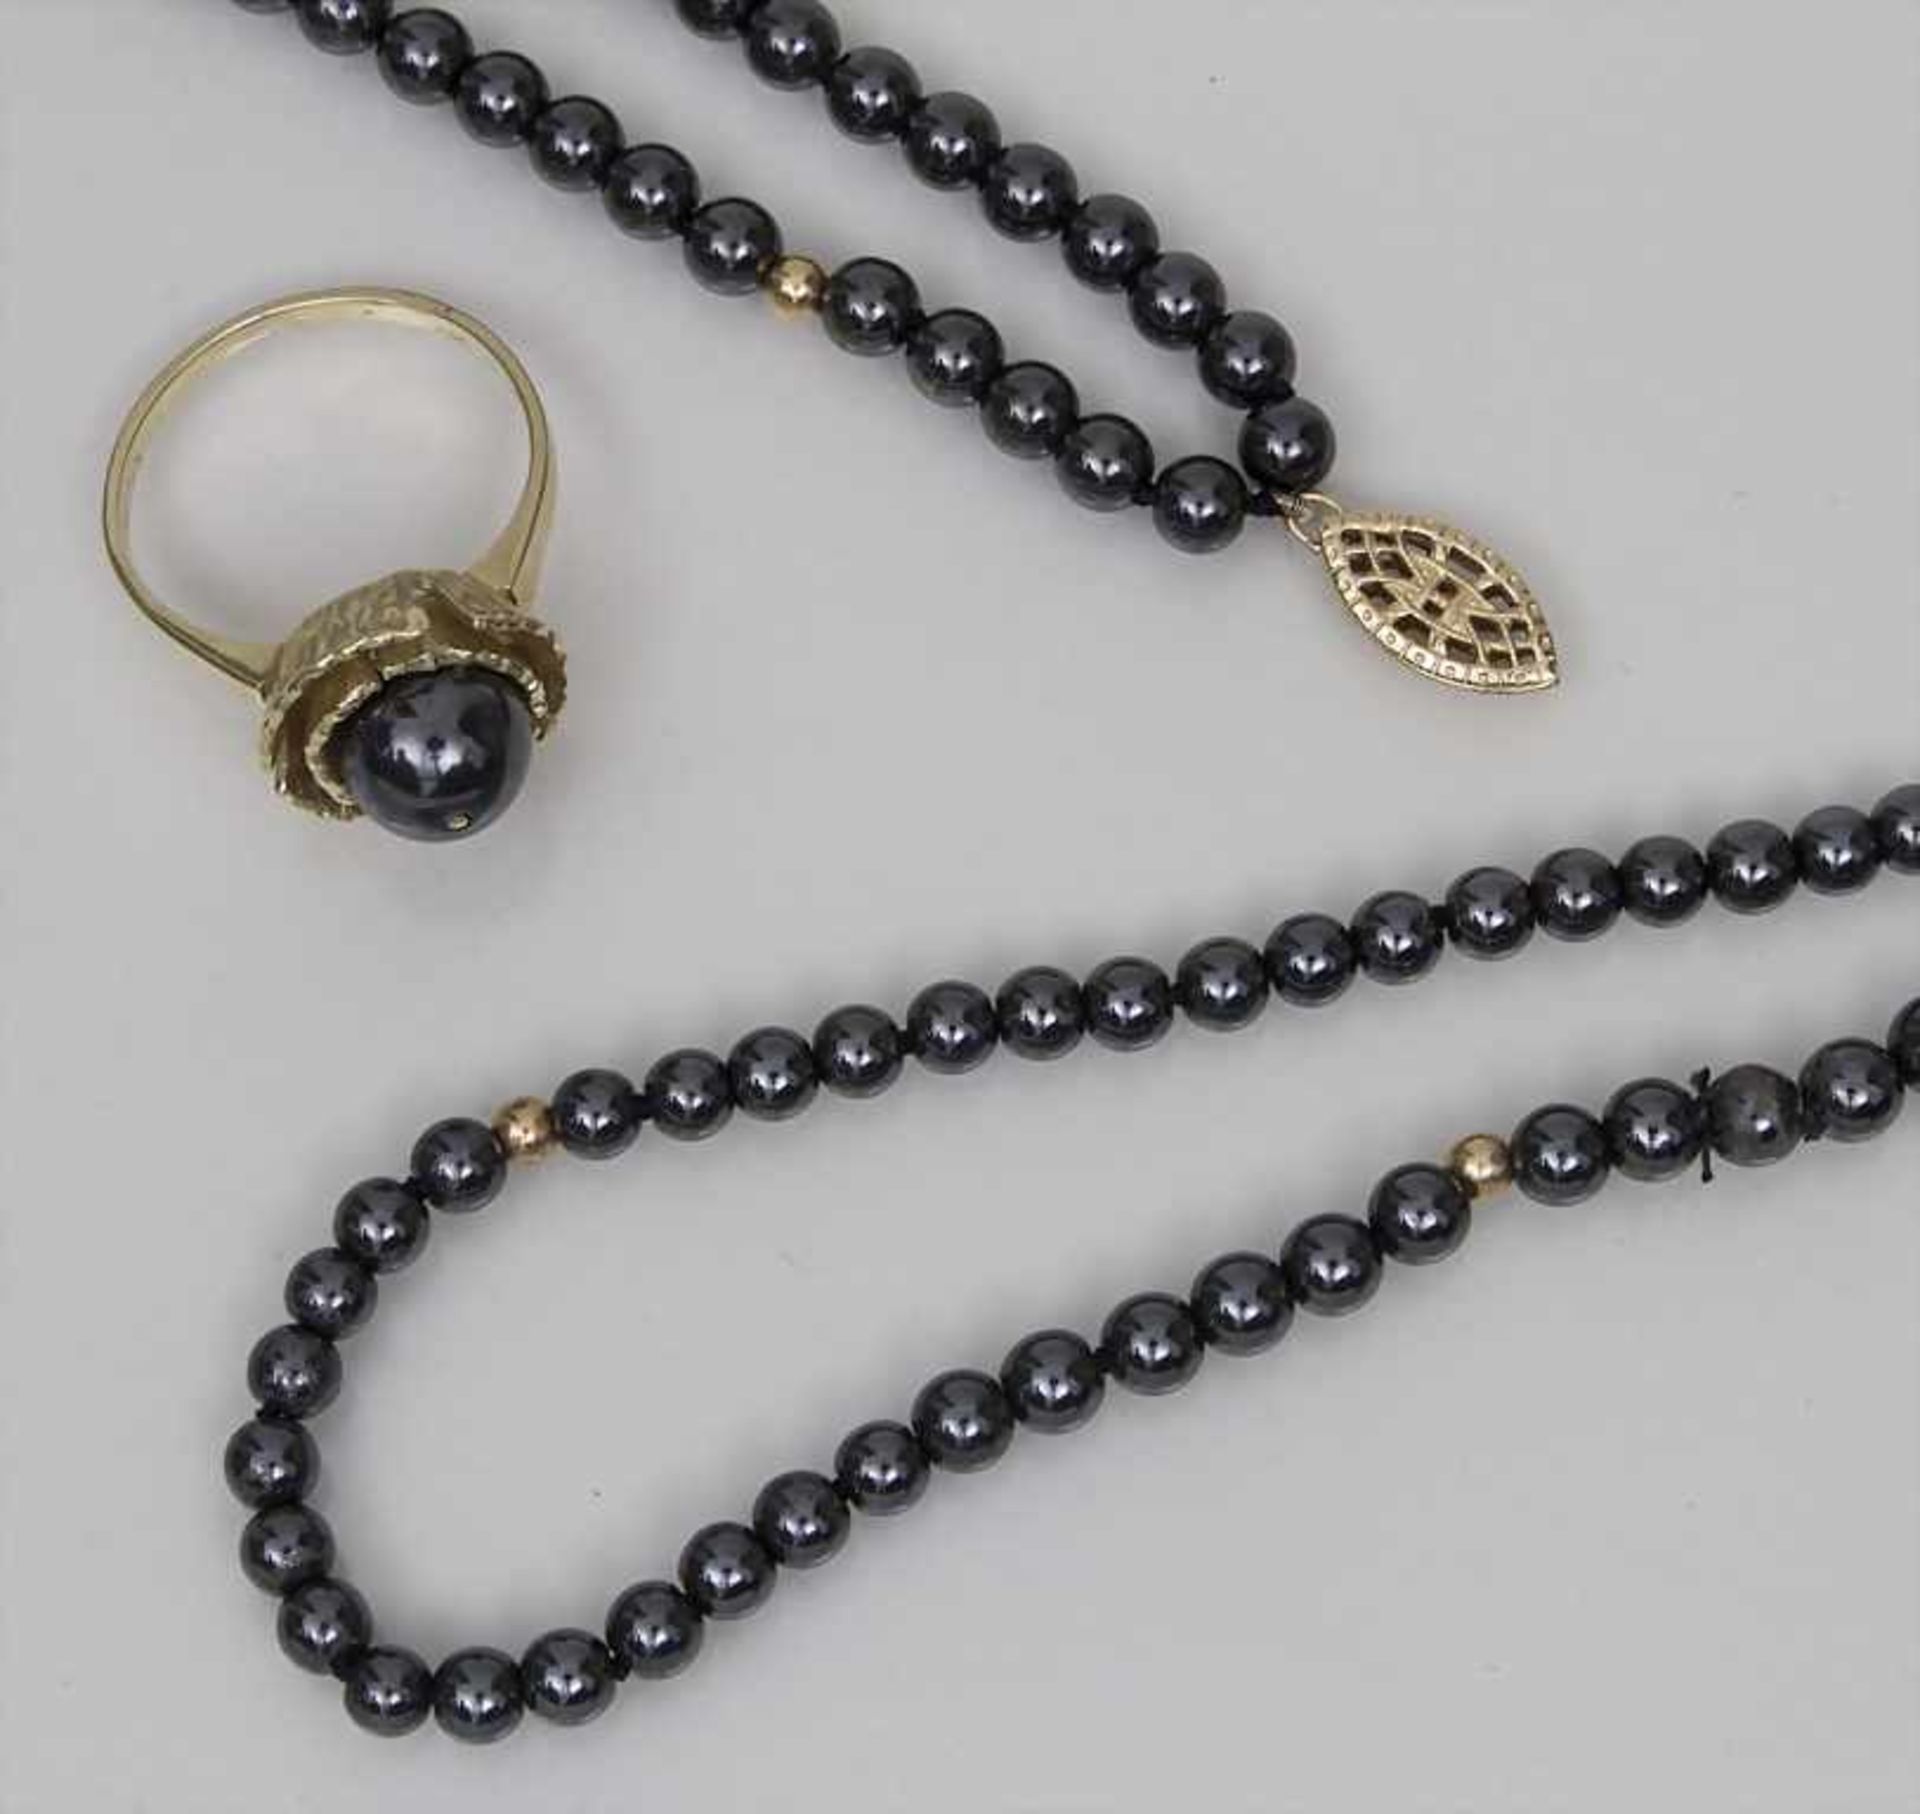 Schmuckset aus Hämatit / A Jewellery Set of Haematite Beads bestehend aus: Endloskette, zweireihiges